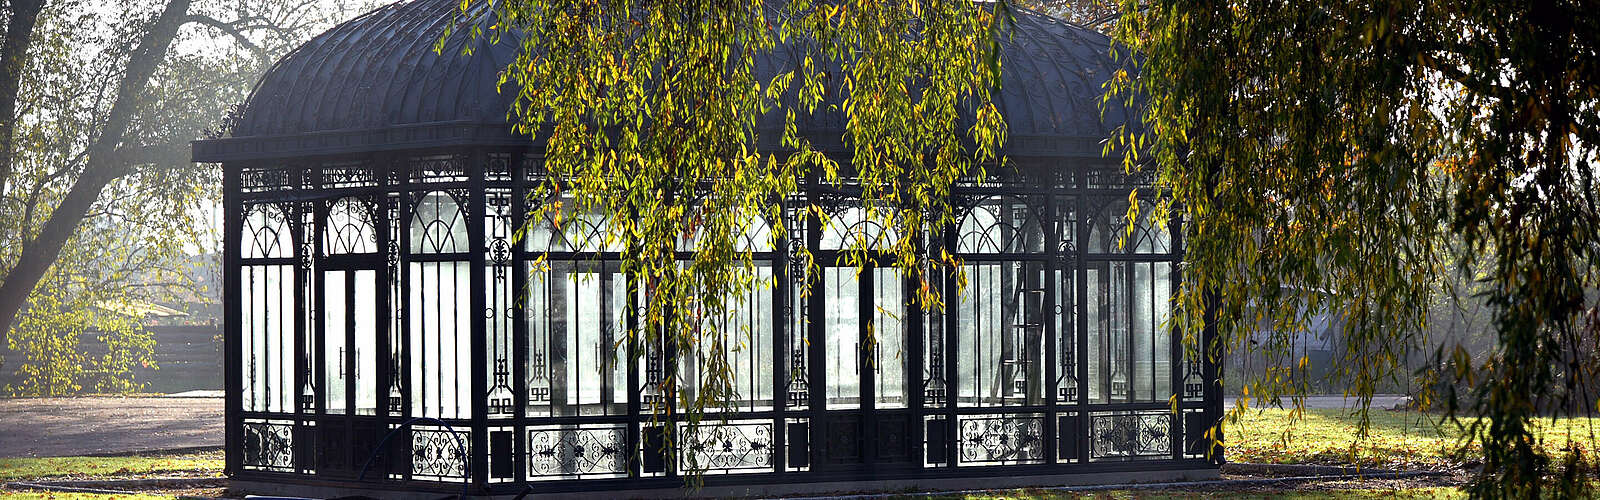 Landesgartenschau Beelitz,
        
    

        Foto: LAGA Beelitz gGmbH/Schreiber